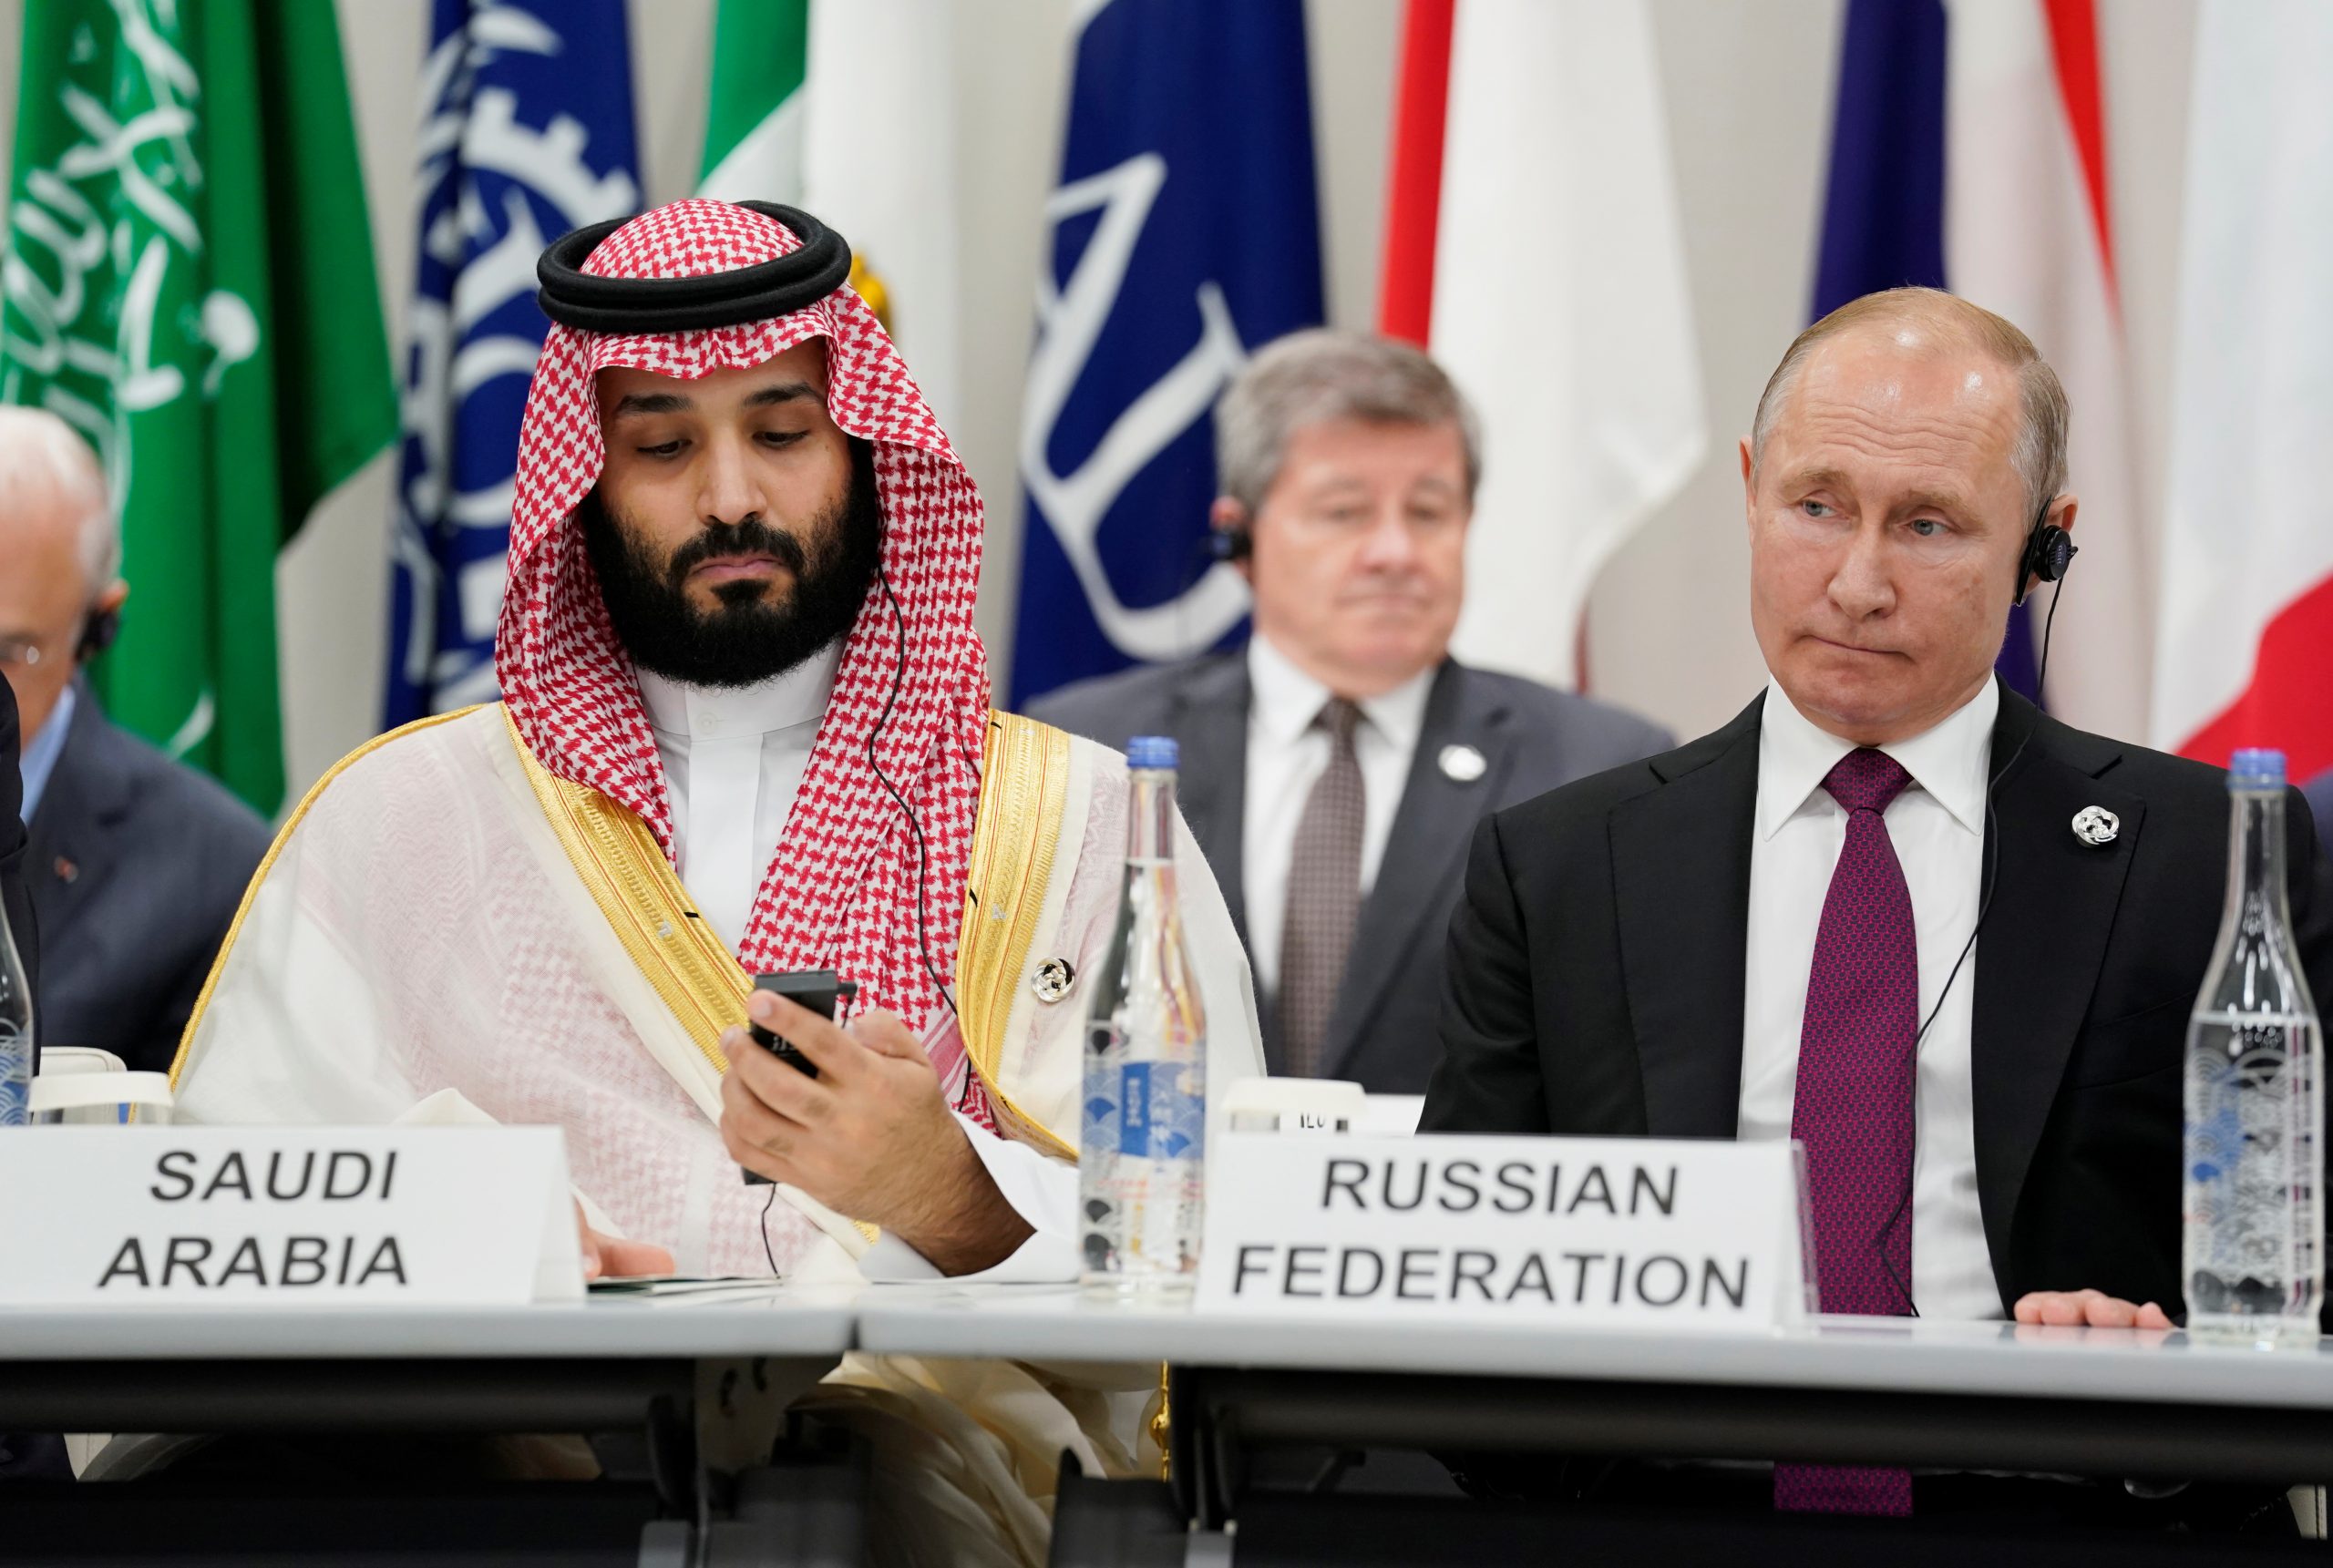 Σαουδική Αραβία: Η μείωση της παραγωγής δείχνει την ισχυρή συνεργασία με τη Ρωσία